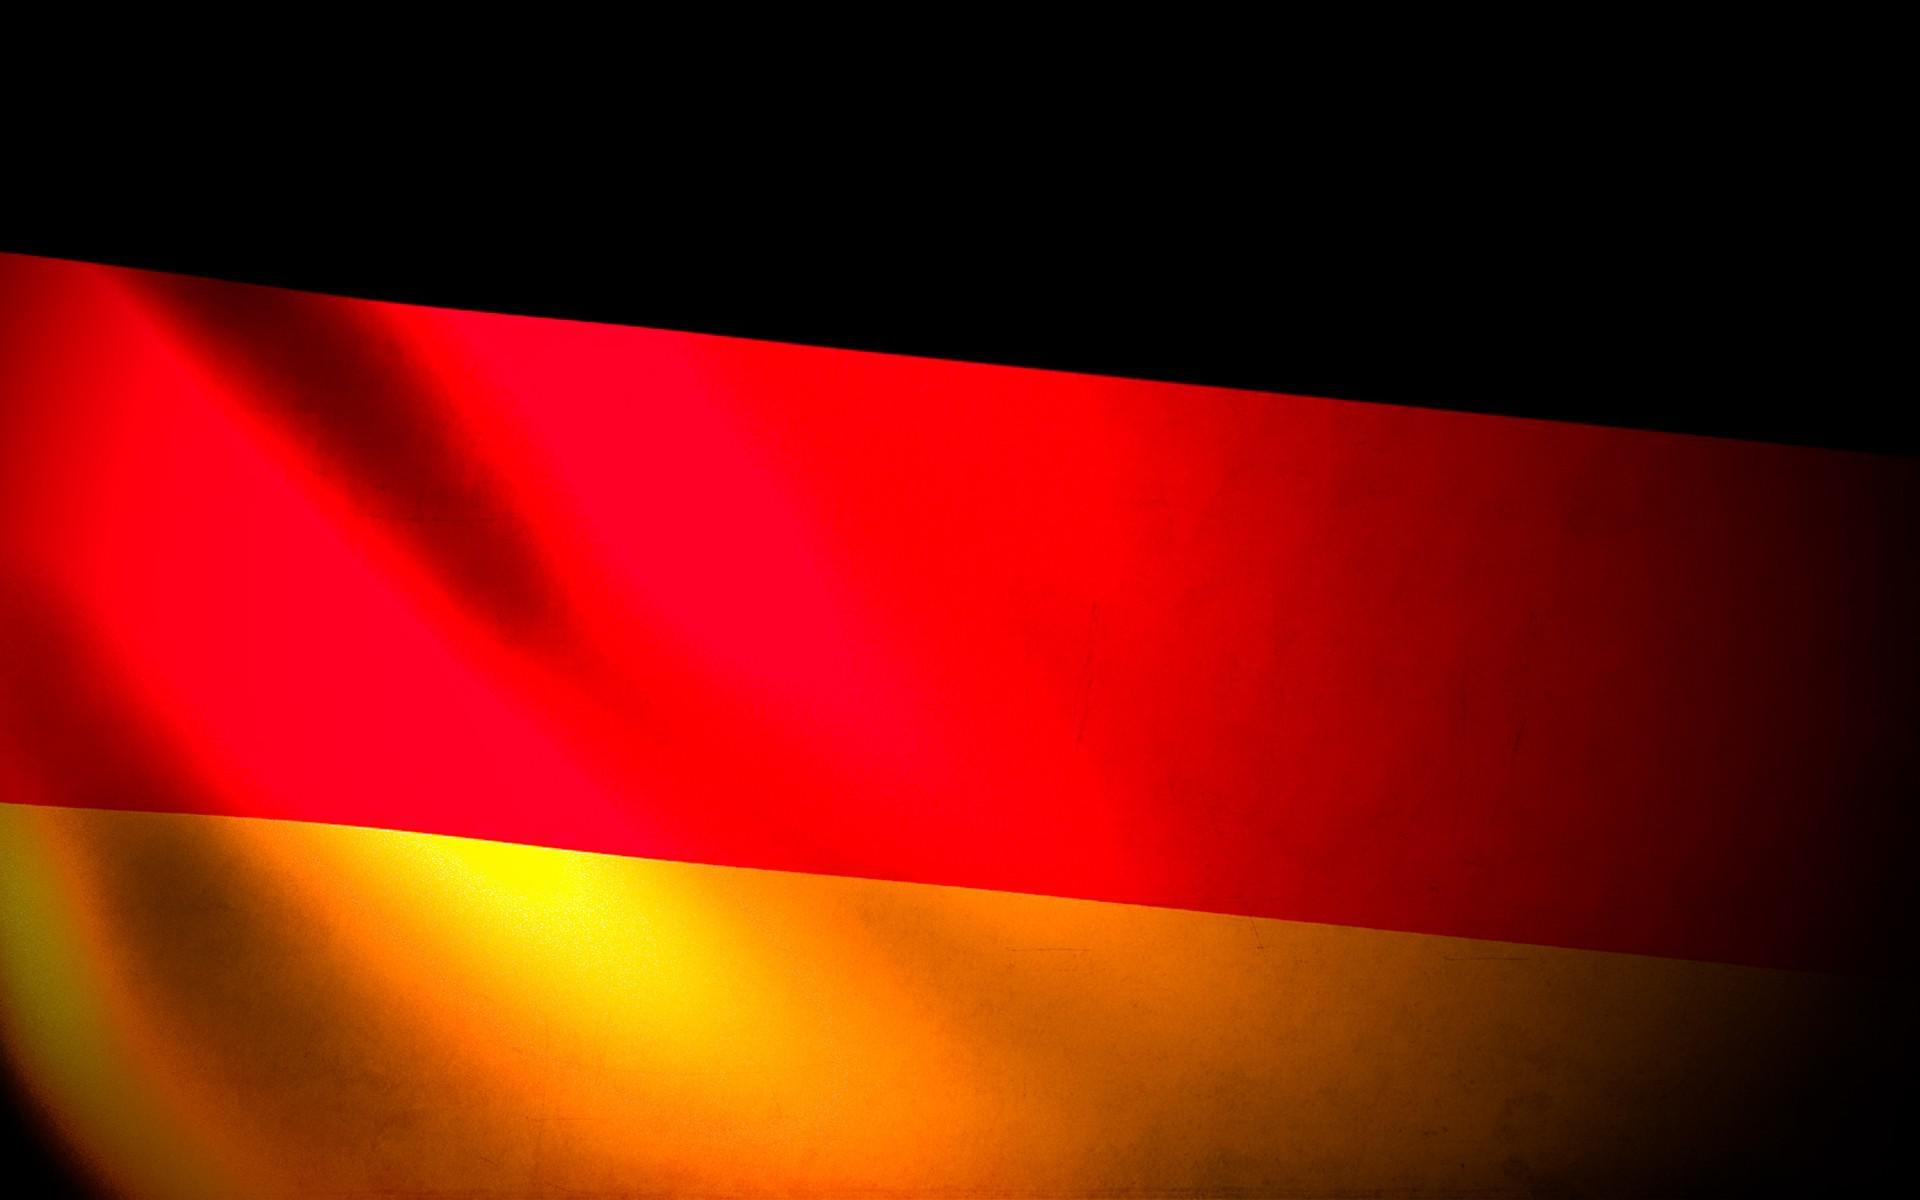 Gambar Gambar Jerman Terbaru , HD Wallpaper & Backgrounds